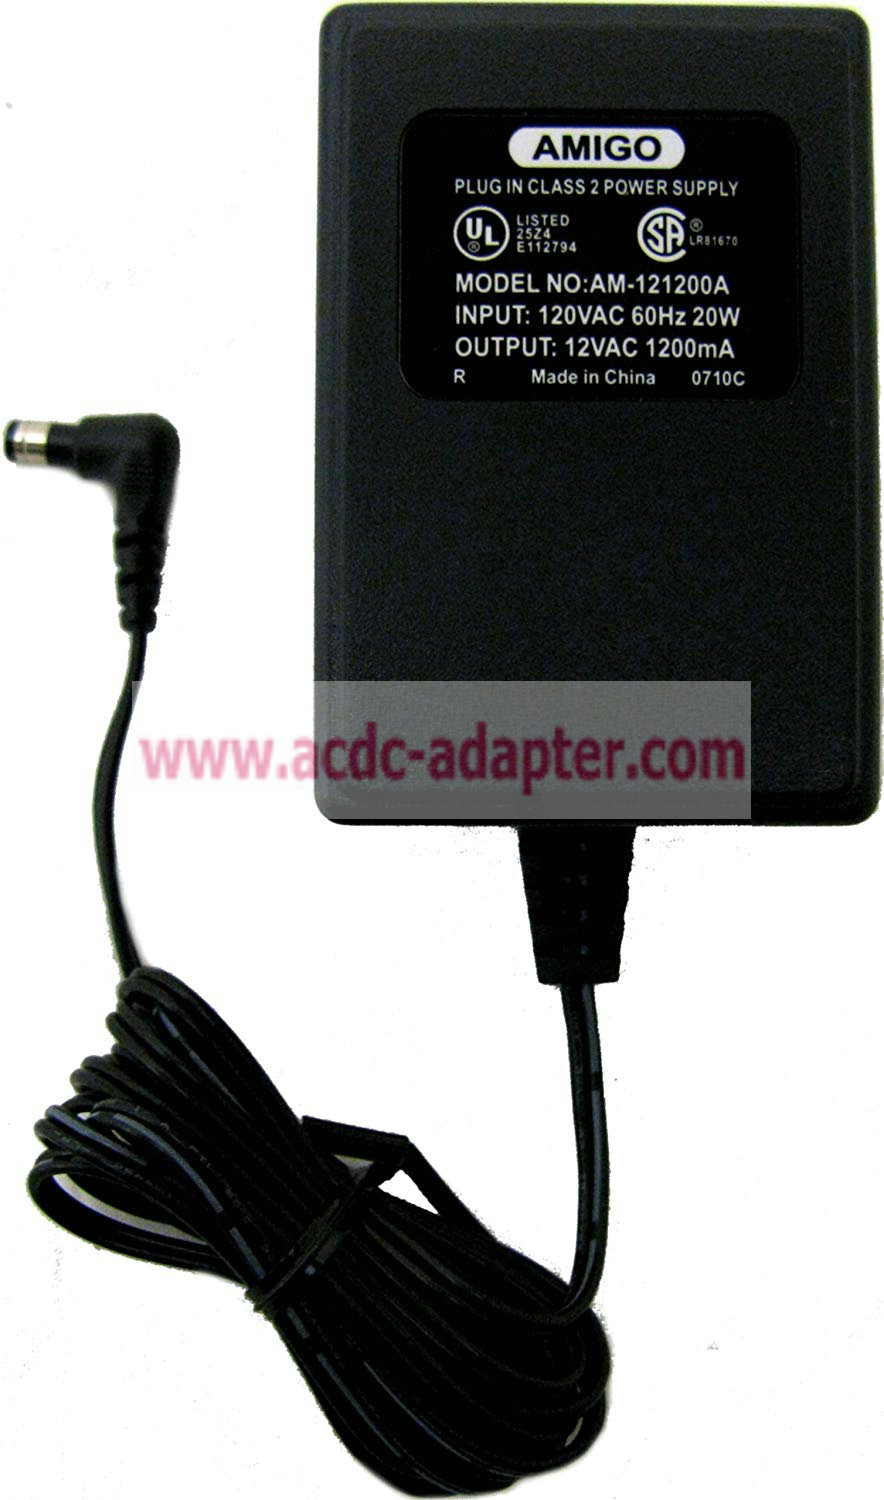 New Amigo AM-121200A 12VAC 1200MA AC Adapter Plug-in Class 2 Power supply